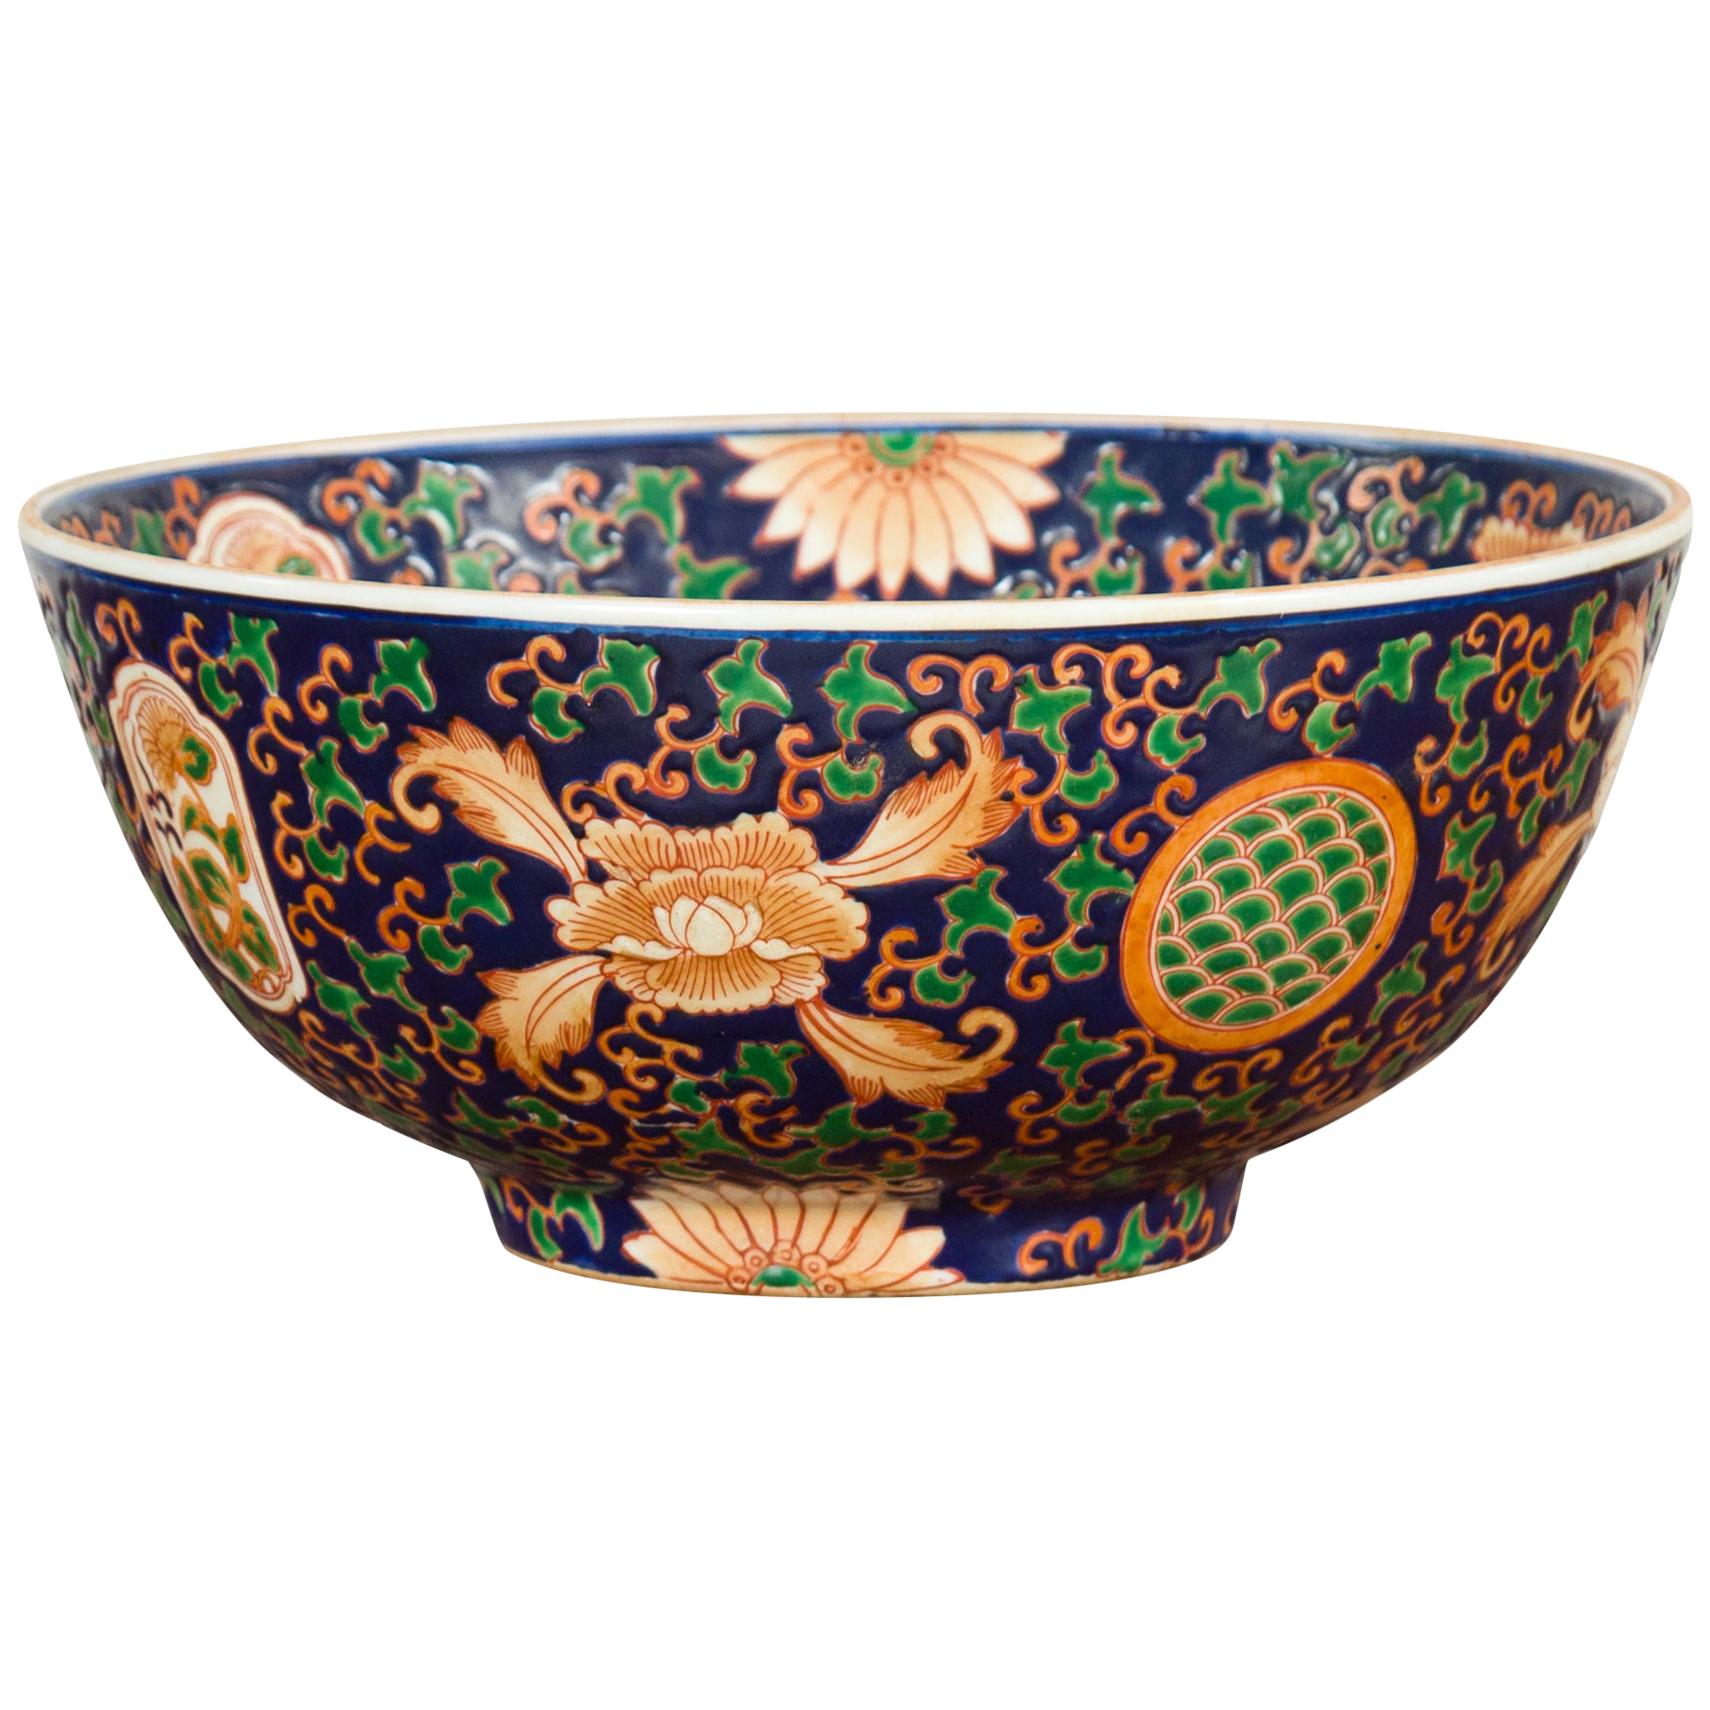 Bol décoratif chinois contemporain peint à la main à motifs floraux avec fond bleu cobalt